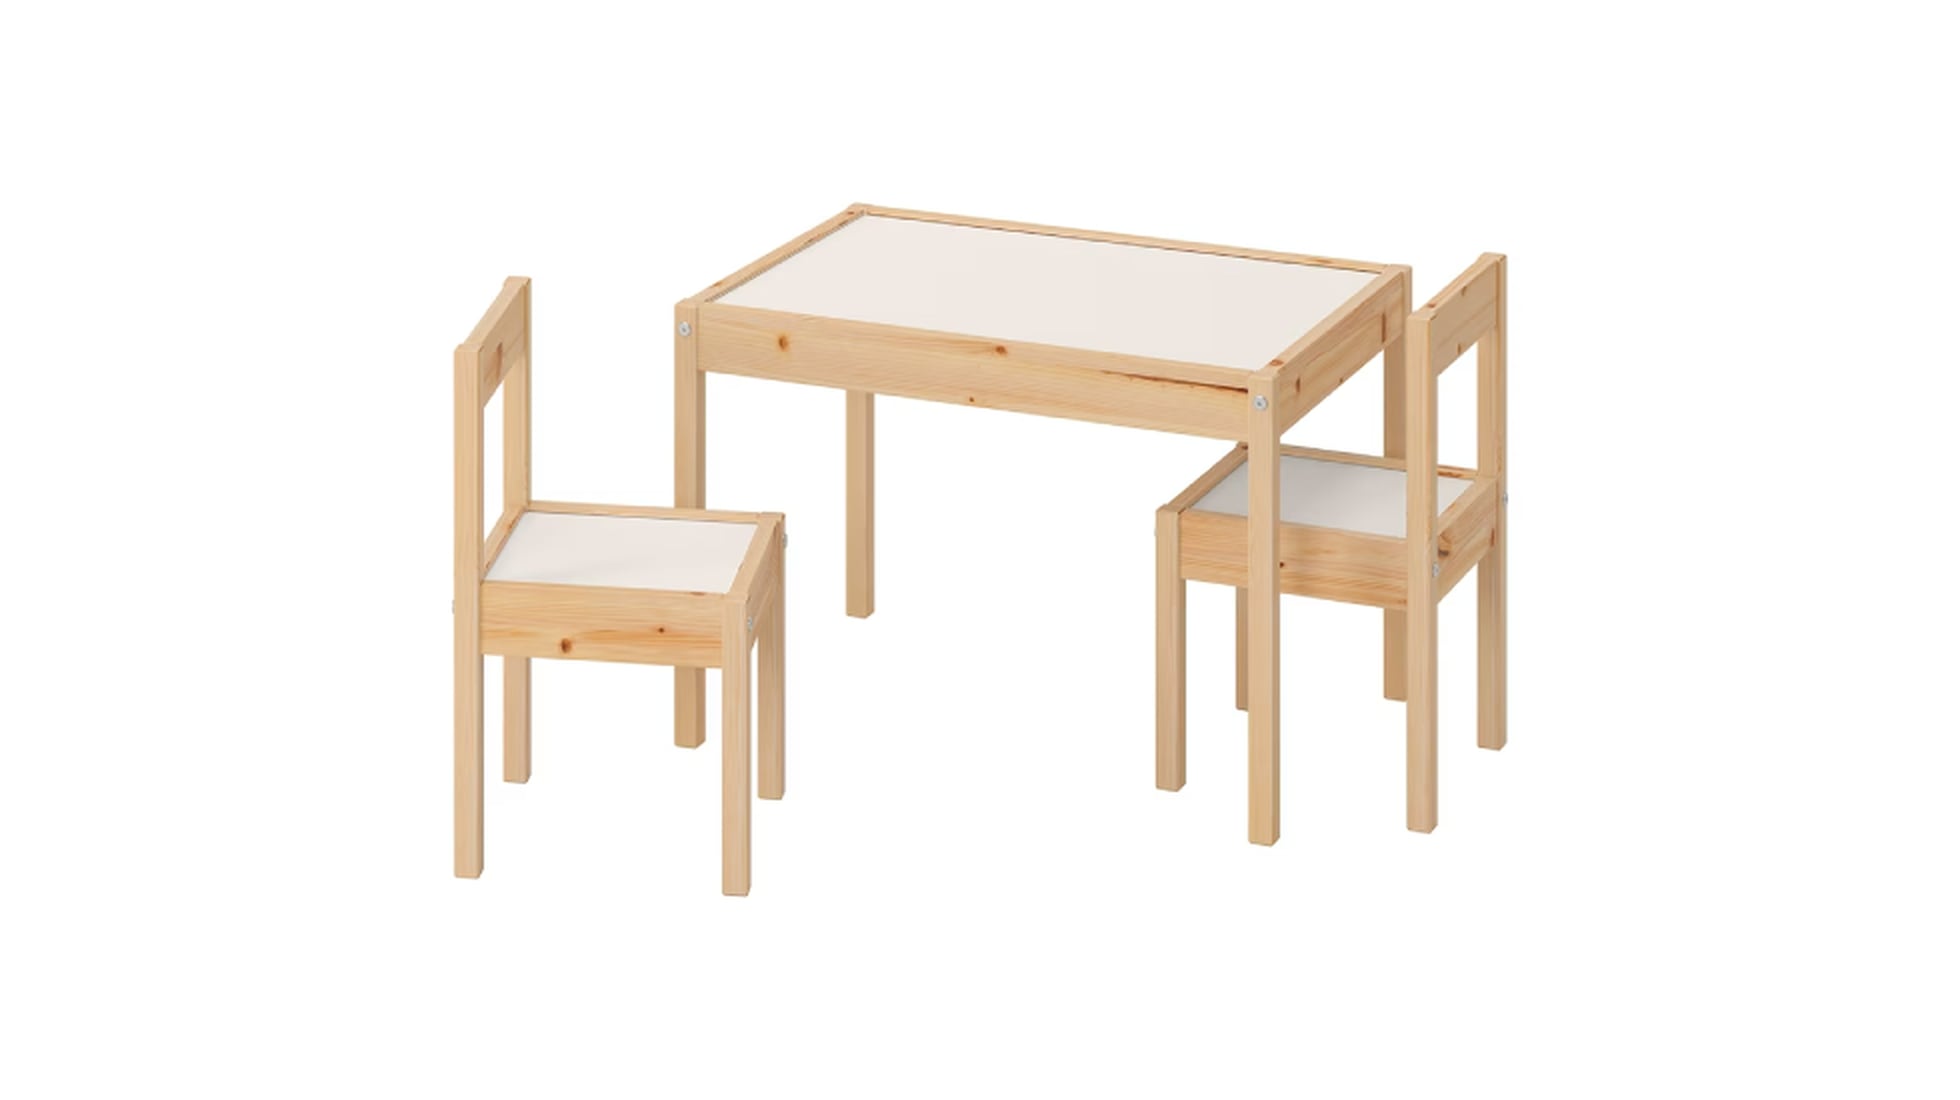 La famosa mesa infantil de Ikea ahora tiene descuento, Estilo de vida, Escaparate